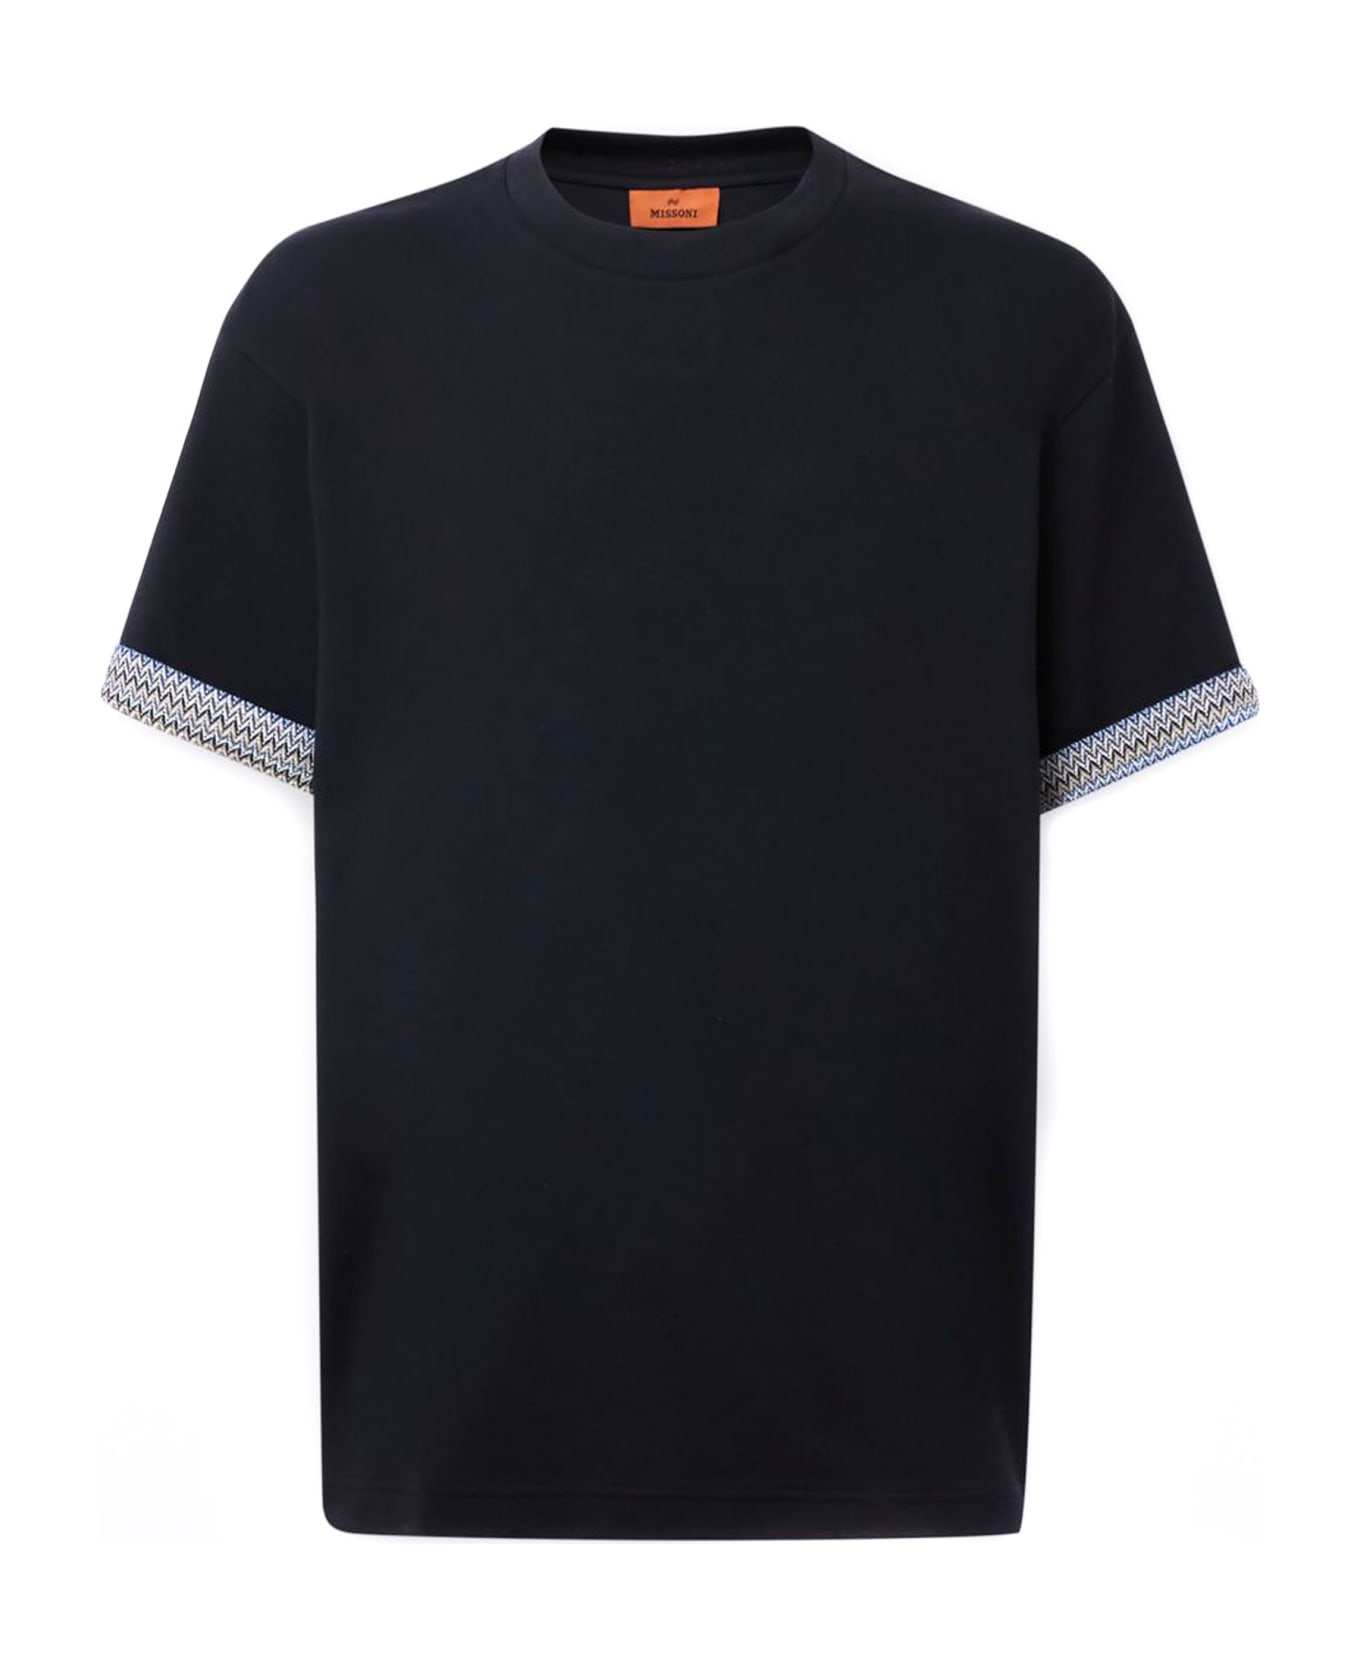 Missoni T-shirts And Polos Black - Black